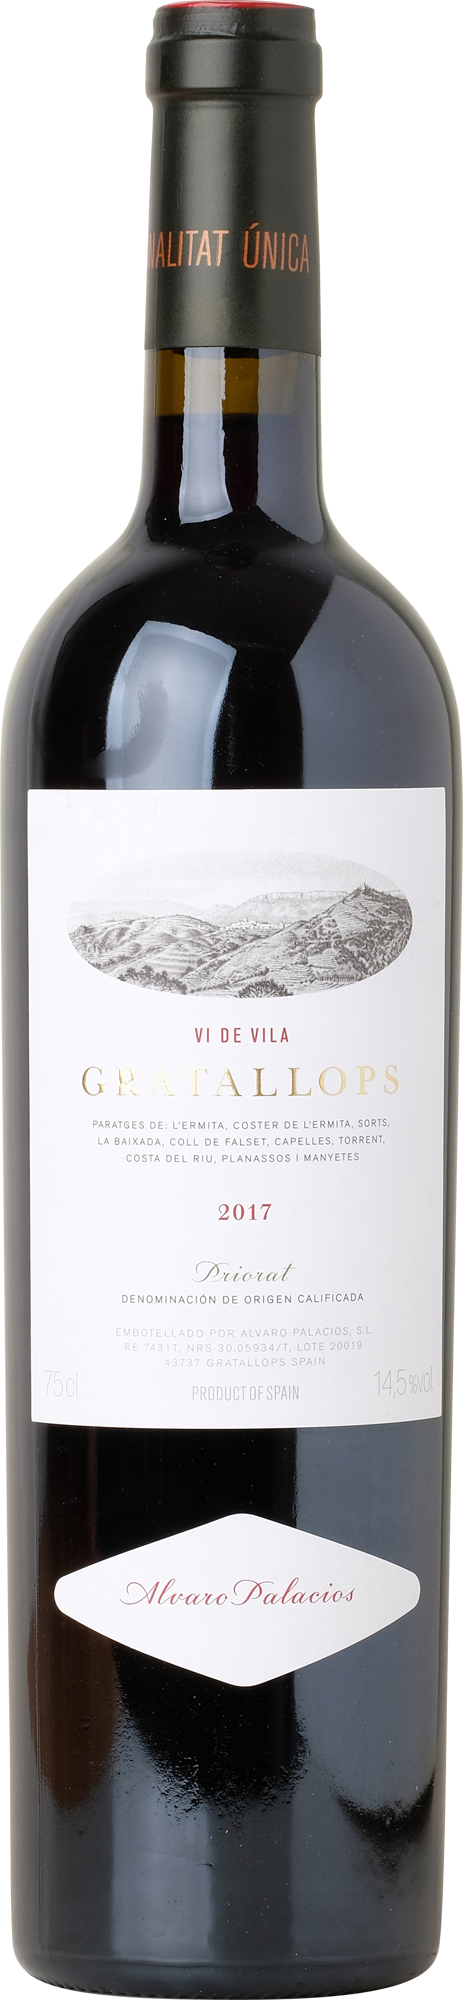 Gratallops, Priorat 2017 0,75 l